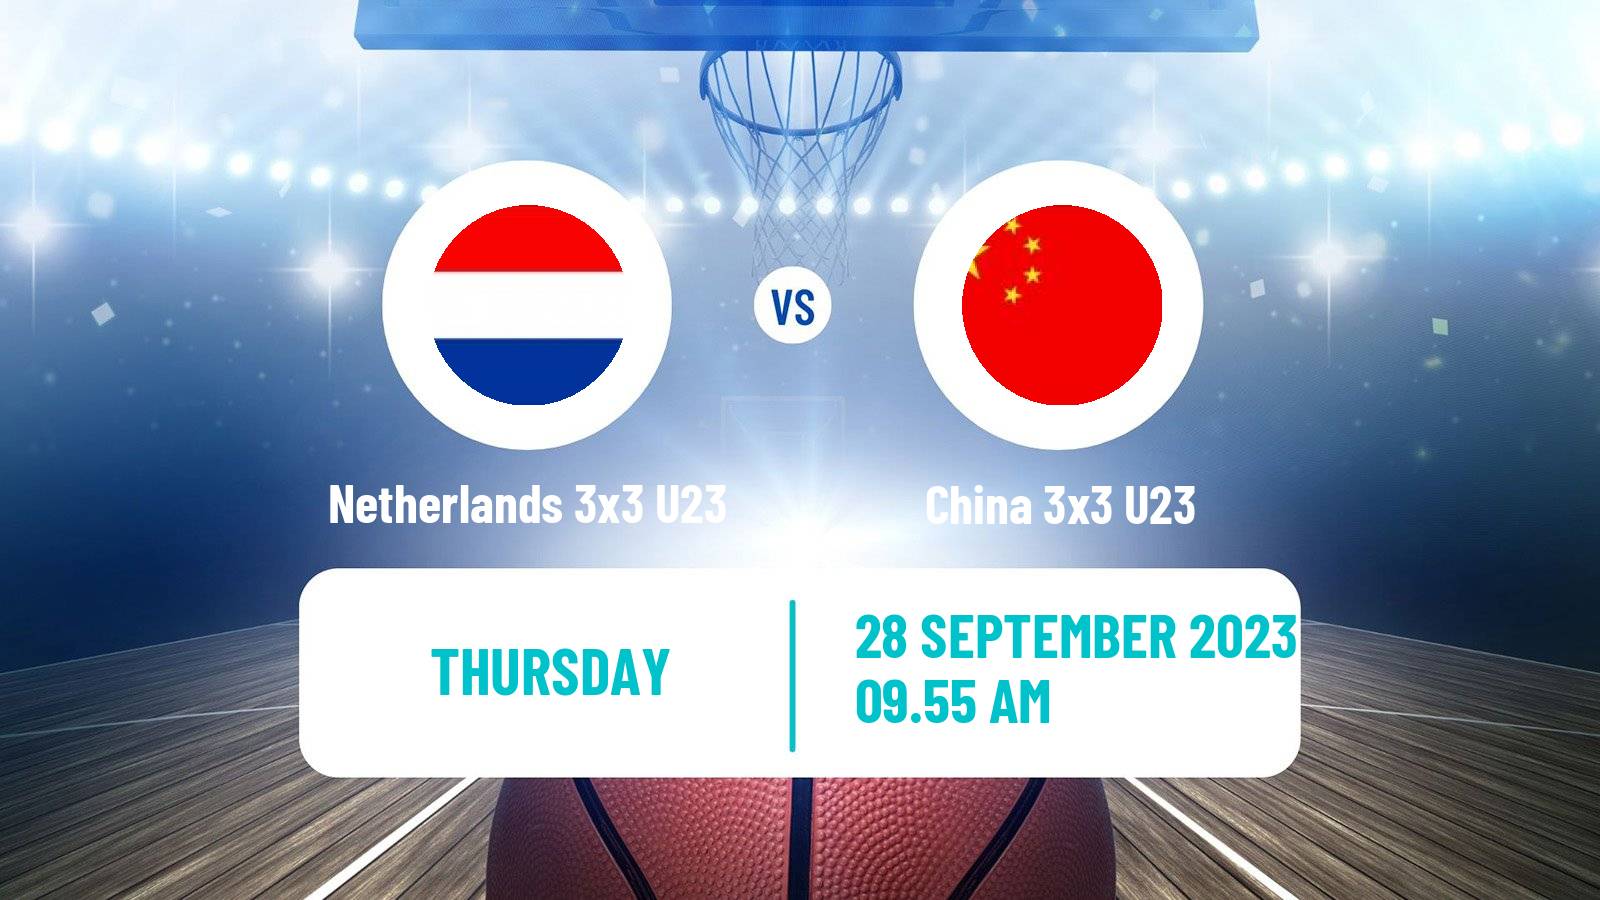 Basketball World Cup Basketball 3x3 U23 Netherlands 3x3 U23 - China 3x3 U23